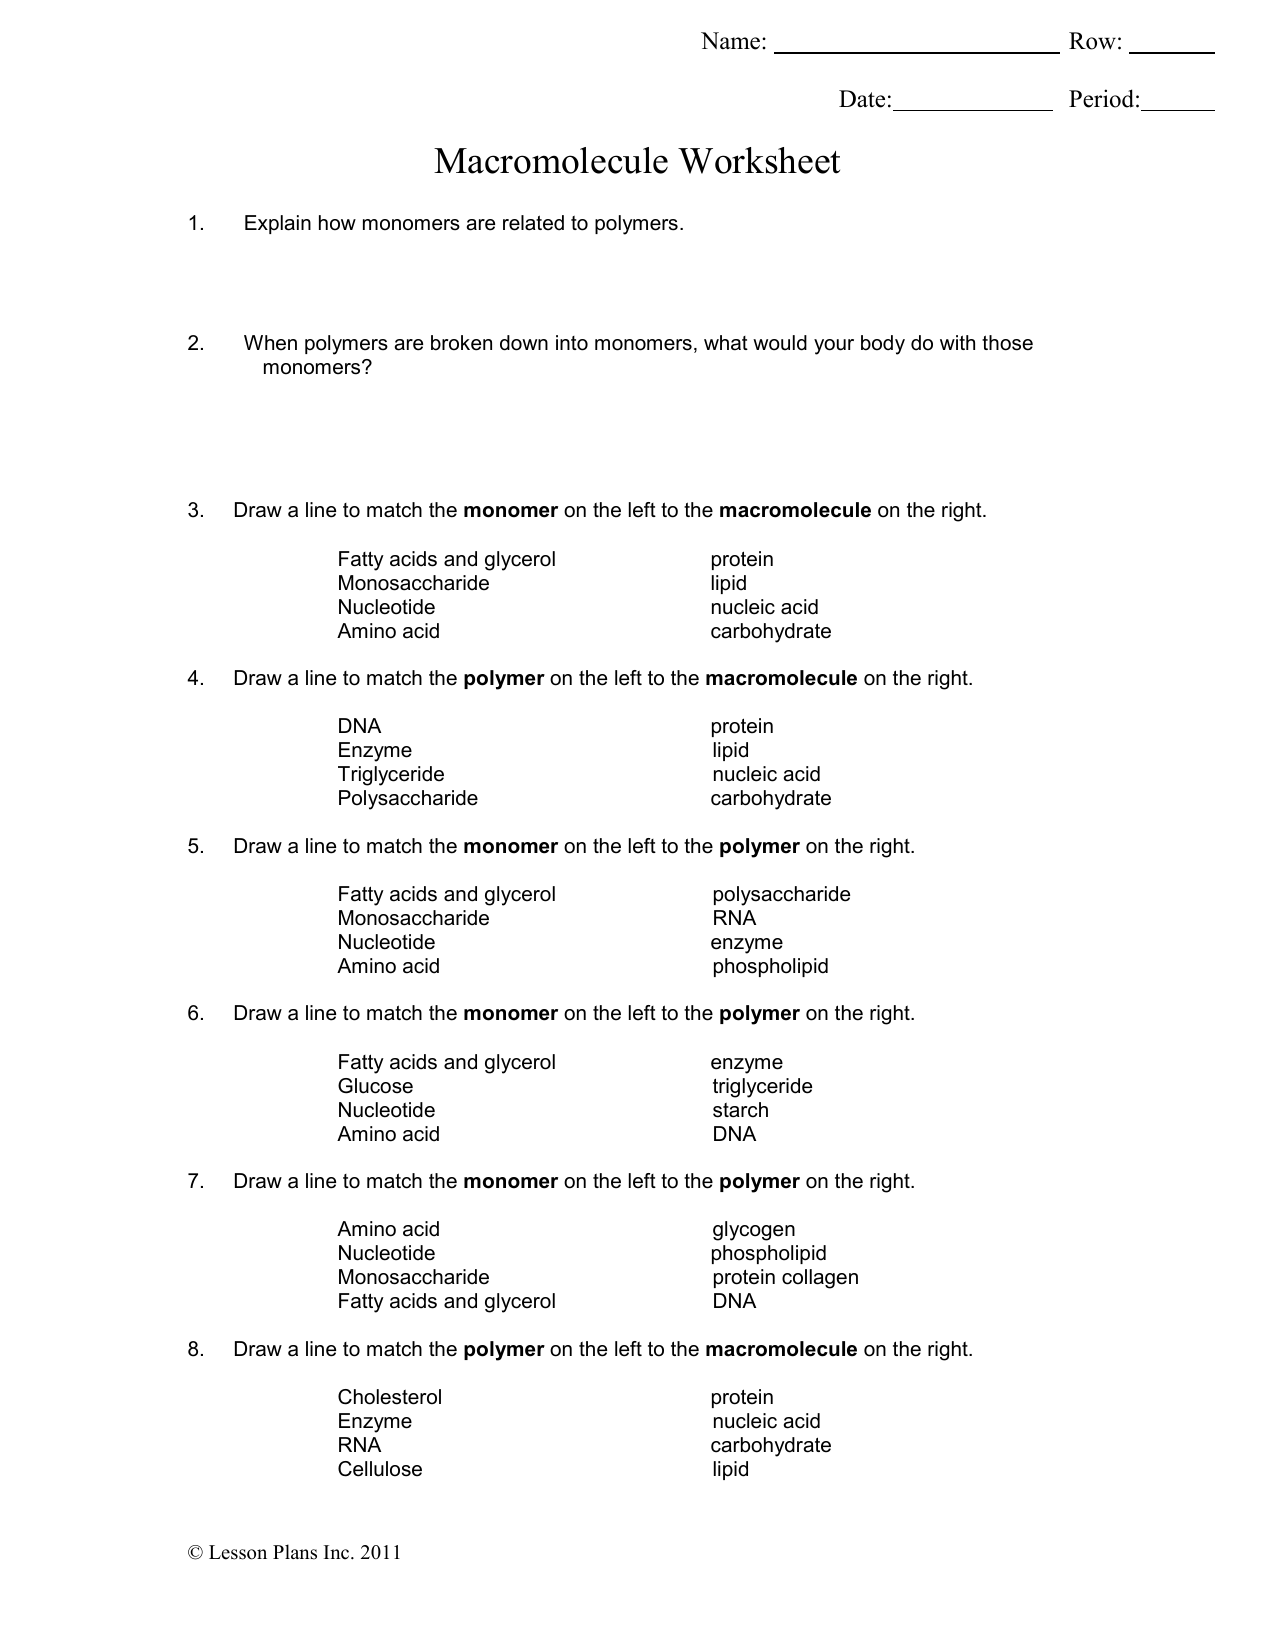 Macromolecule Worksheet Intended For Macromolecules Worksheet 2 Answers